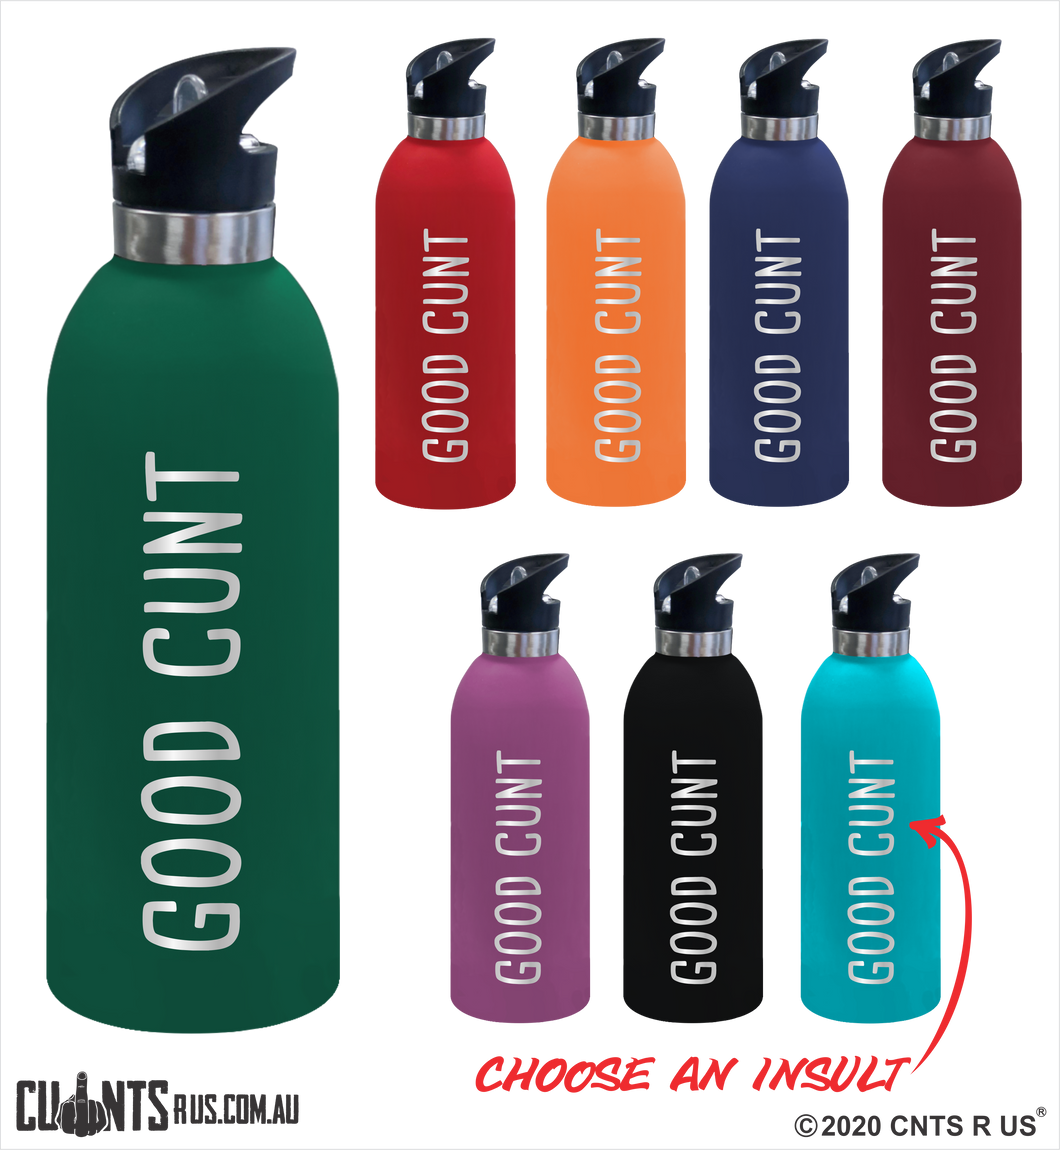 Good Cunt 1 Litre Drink Bottle Laser Engraved Gift - CRU08-68-21008